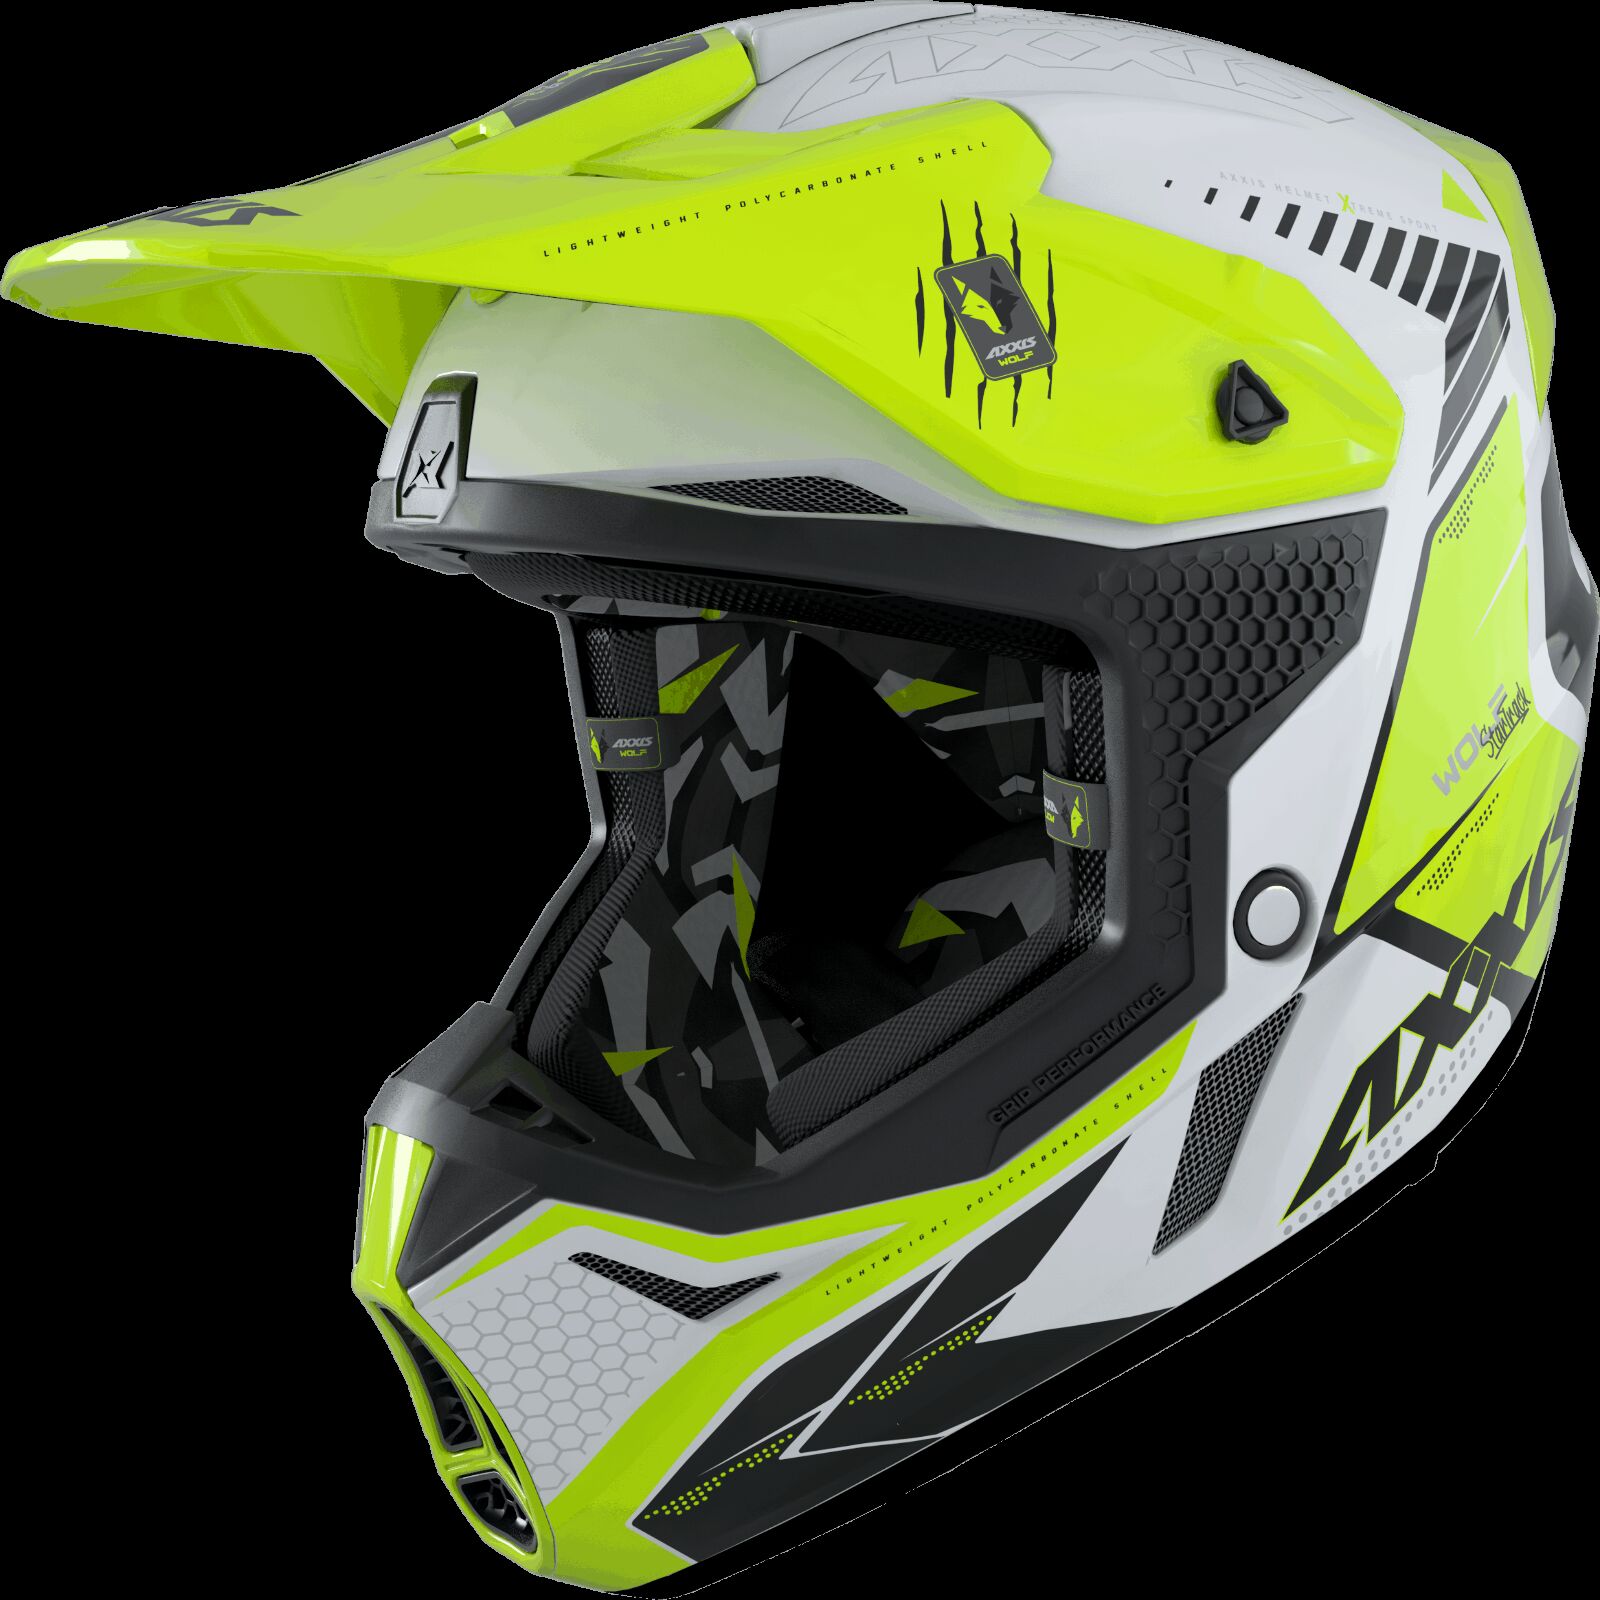 Obrázek produktu Motokrosová helma AXXIS WOLF ABS star track a3 lesklá fluor žlutá XL 42587410307